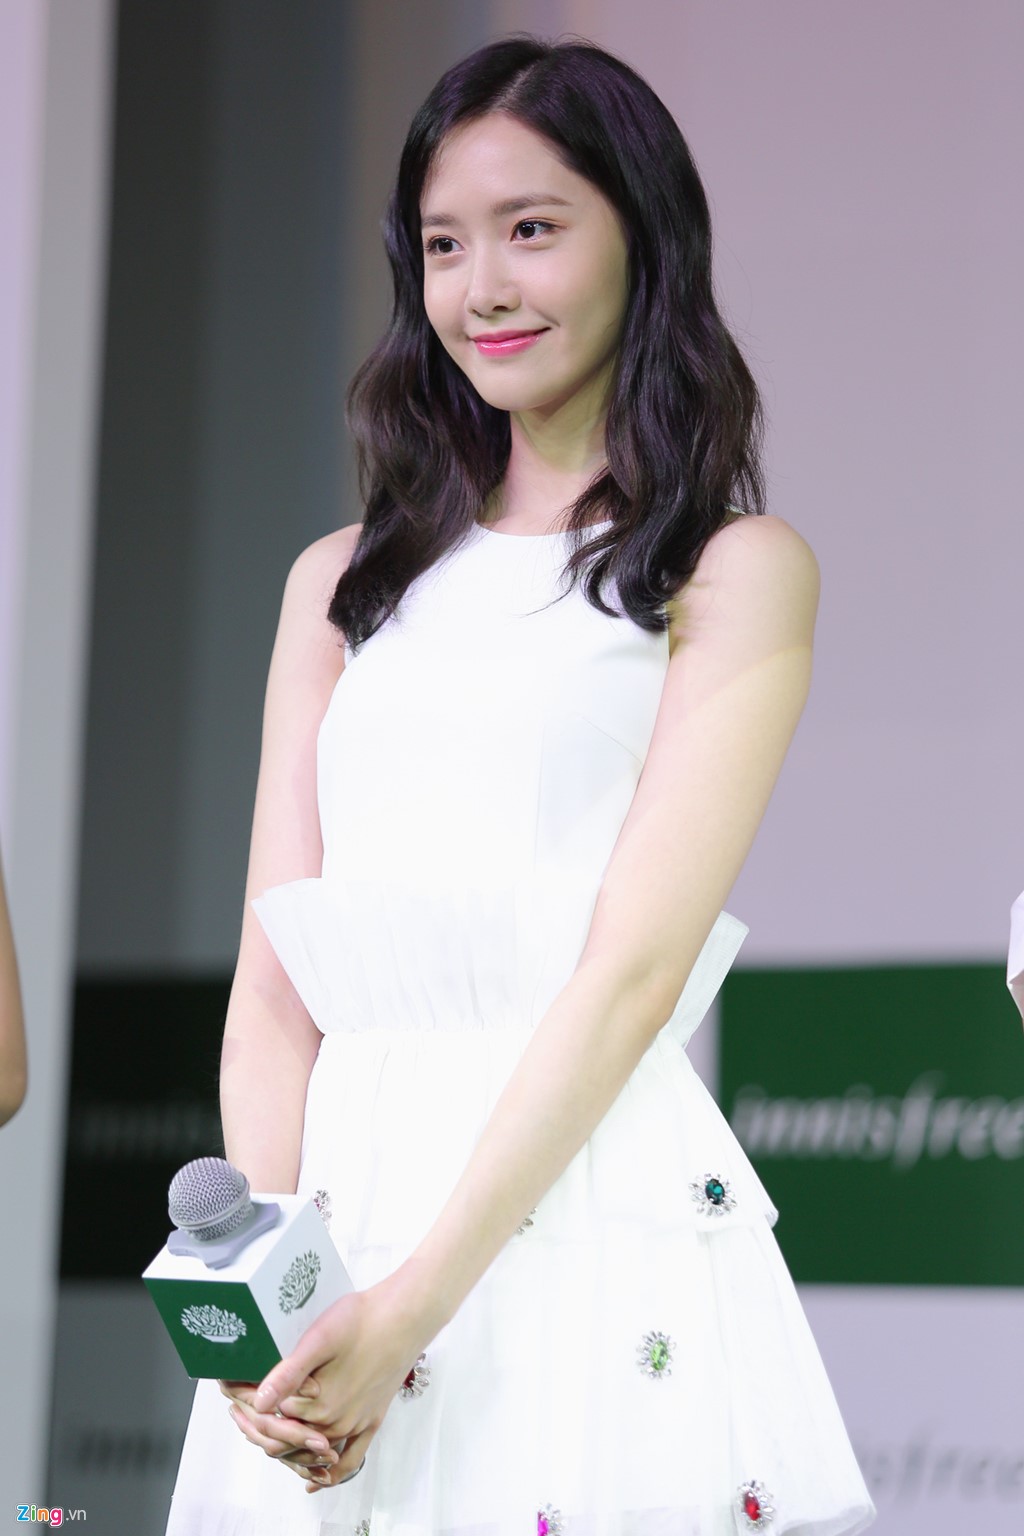 Cận cảnh nhan sắc xinh đẹp của Im Yoona tại innisfree Festa ELLE VN